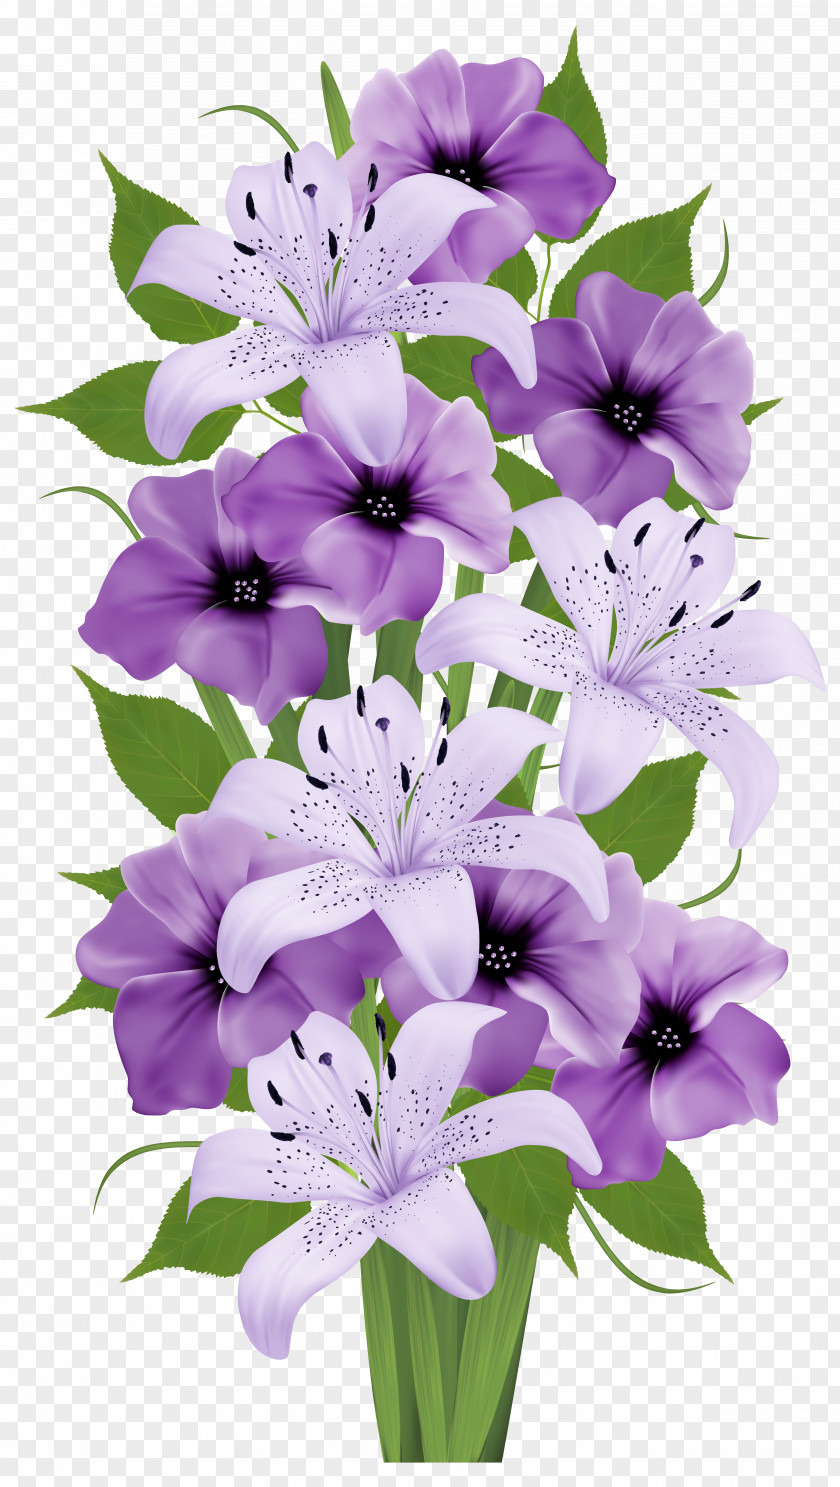 Flower Bouquet Floral Design Clip Art PNG